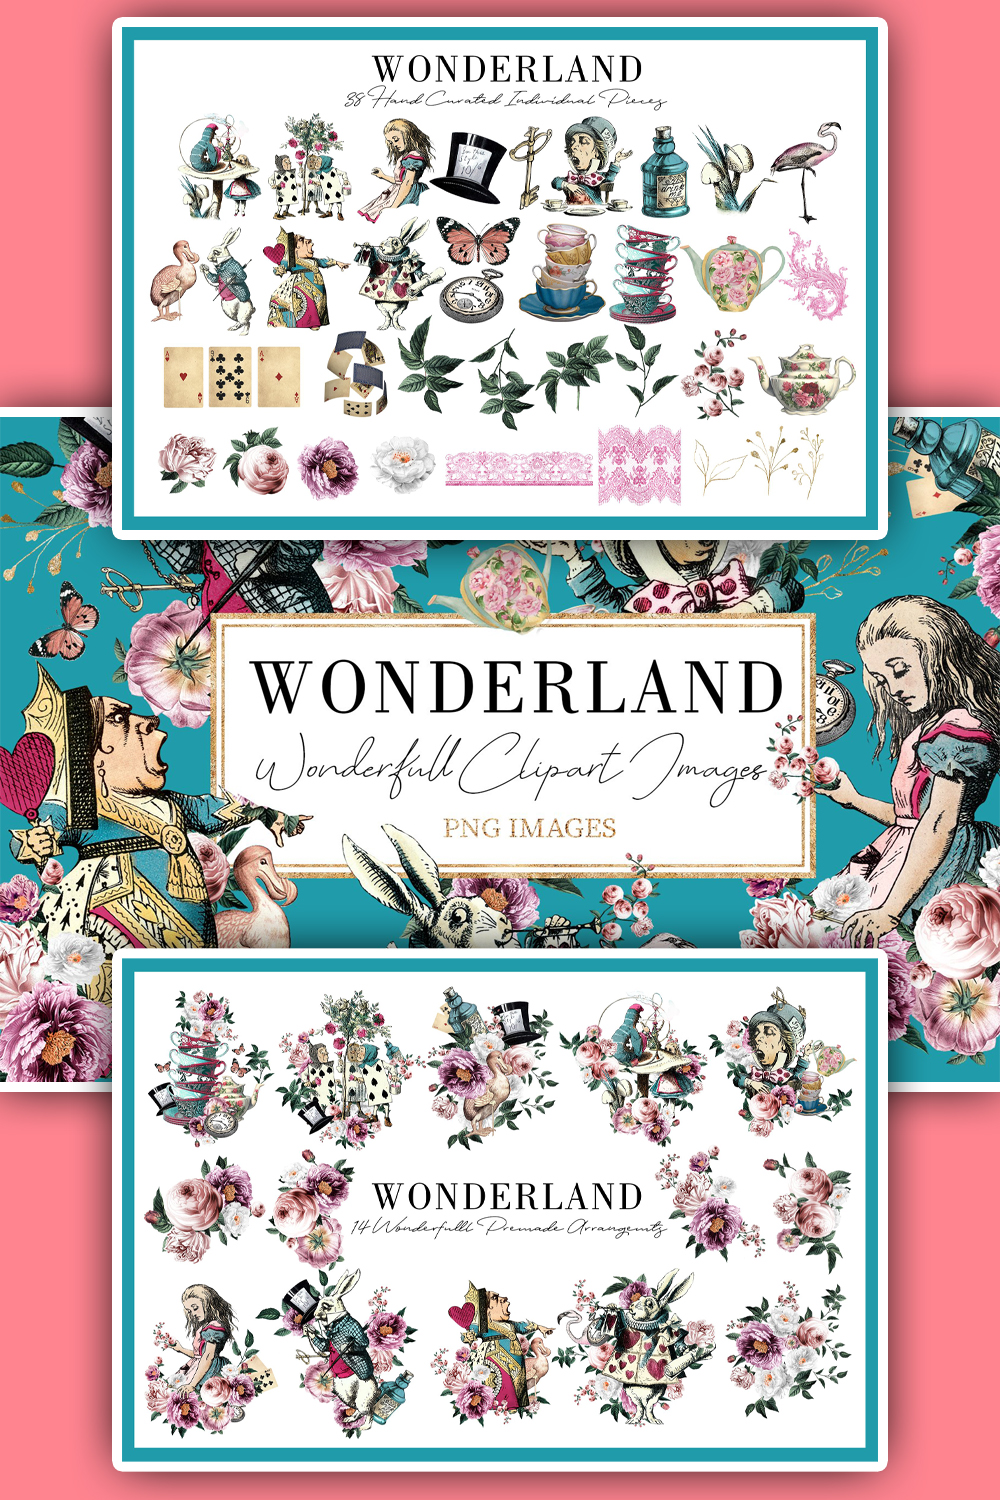 Wonderland alice in wonderland of pinterest.